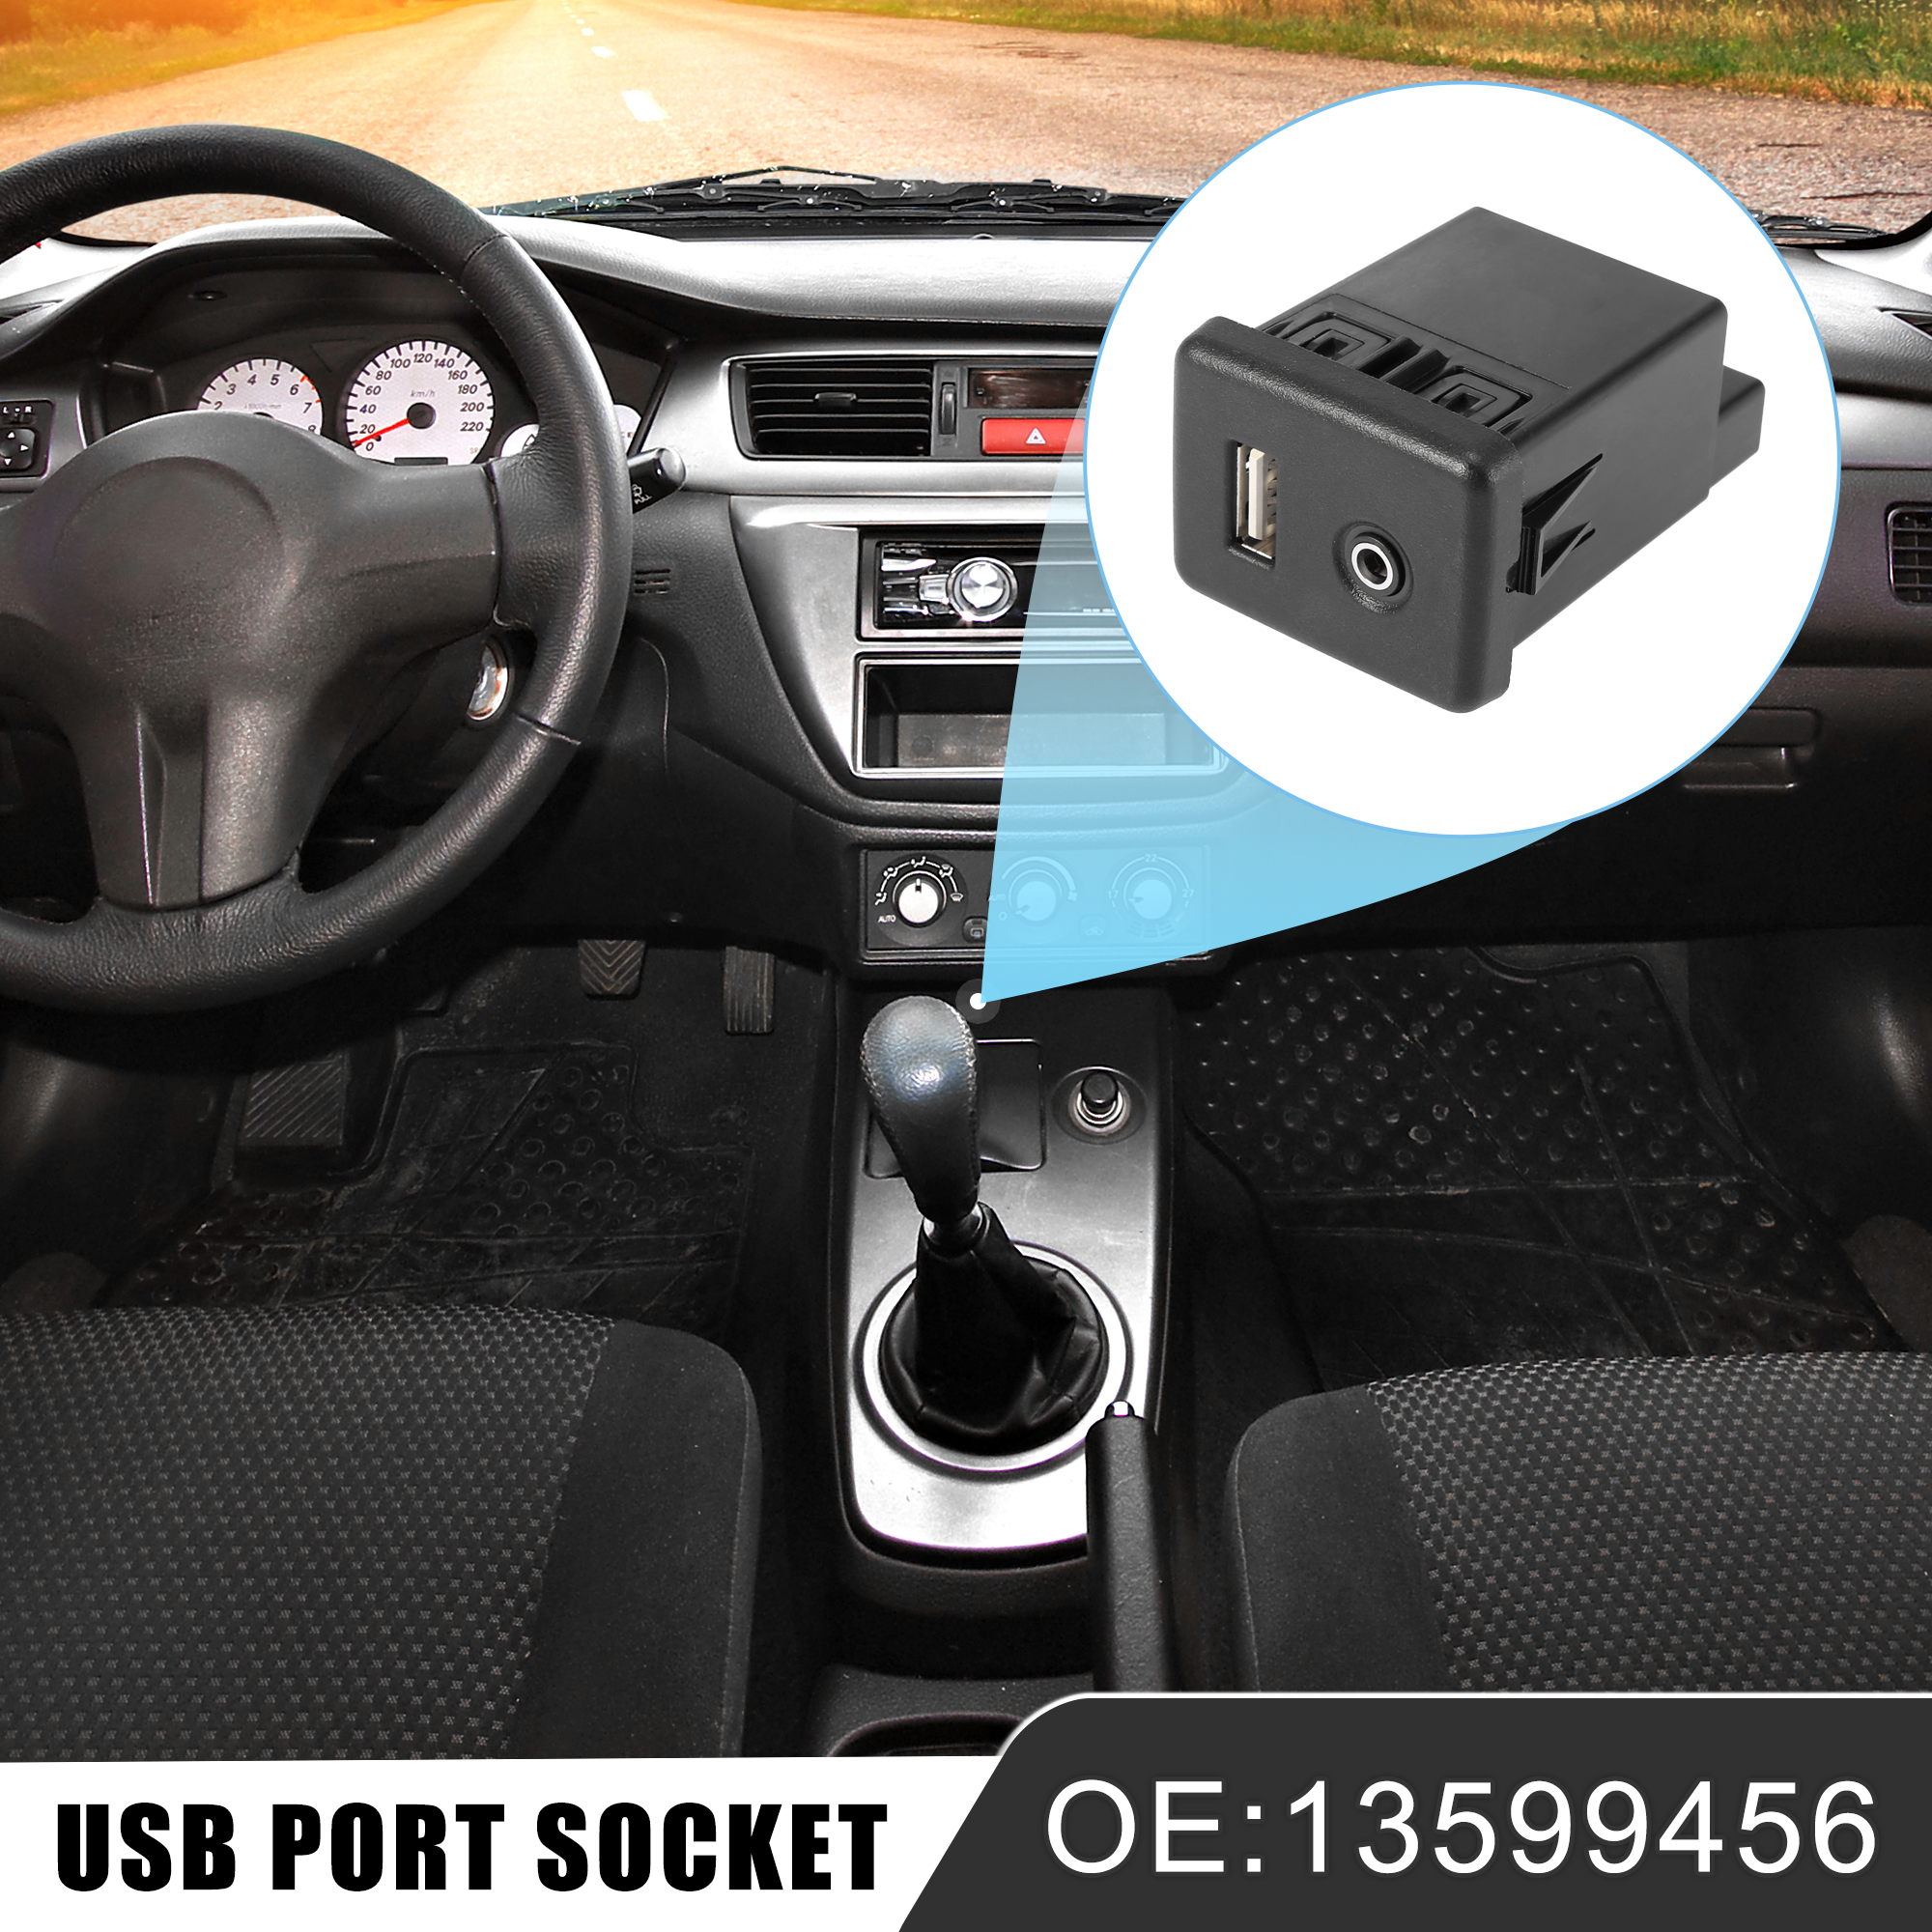 Unique Bargains 13599456 Car USB Auxiliary Plug Port Socket Aux USB Port for Chevrolet